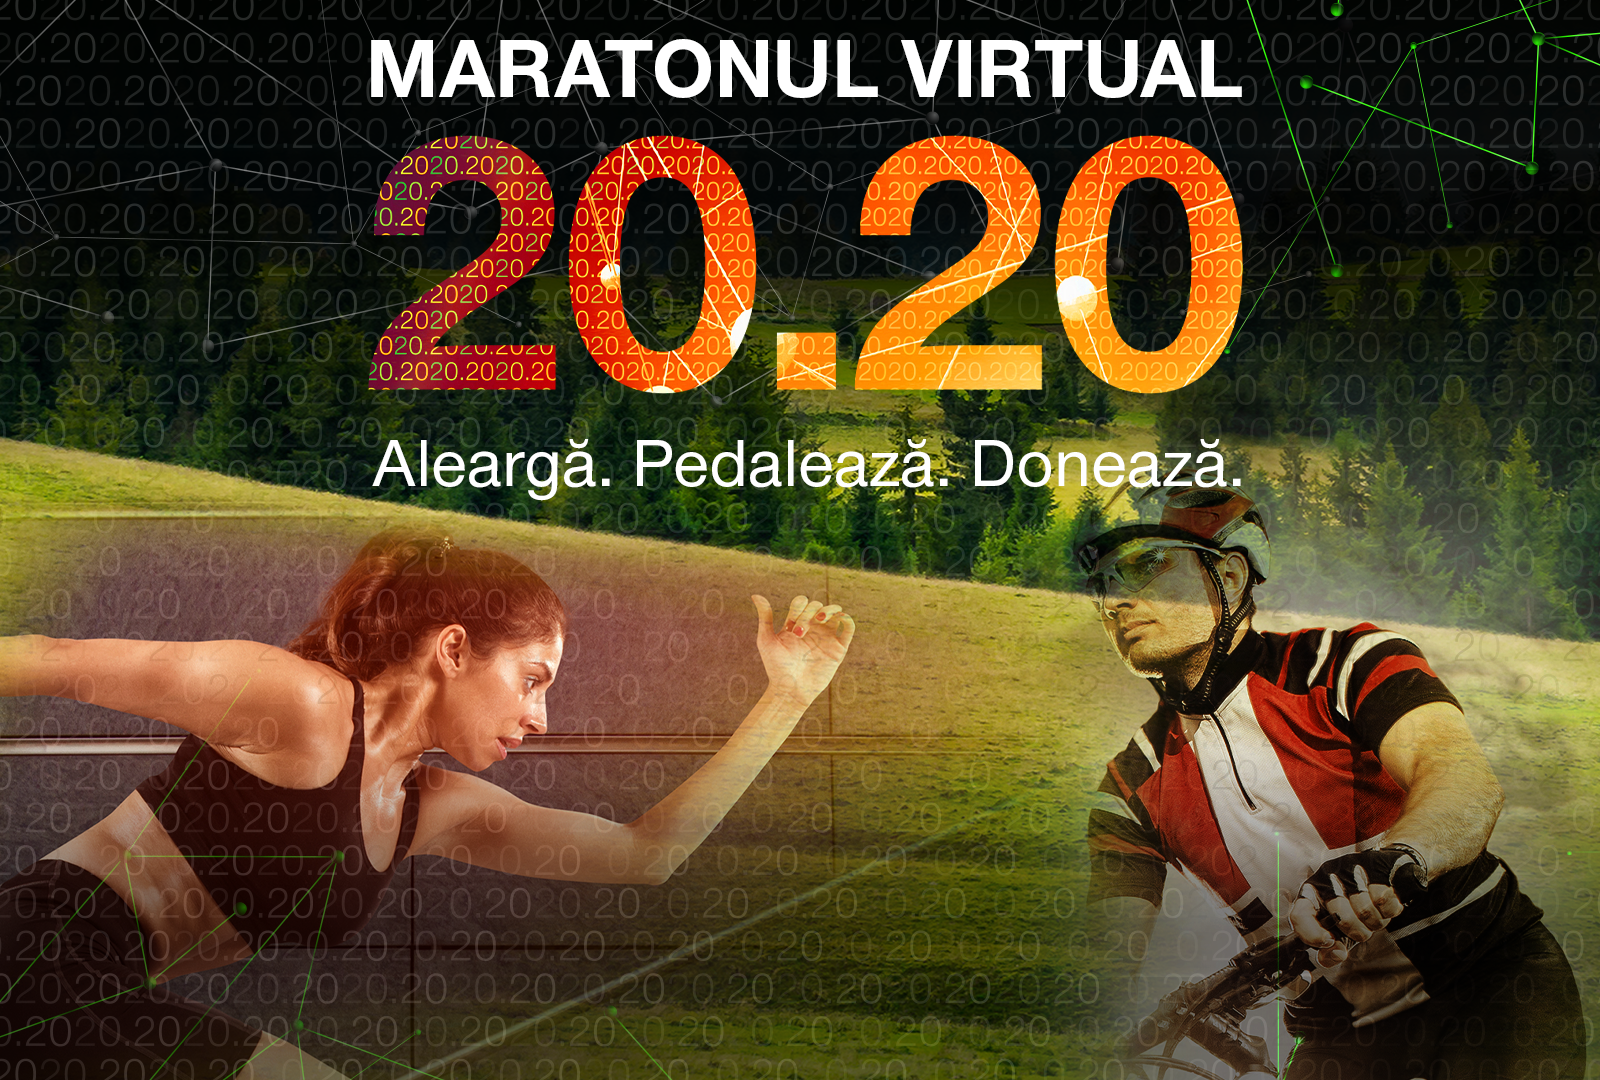 Maratonul Olteniei 2020, cursă virtuală